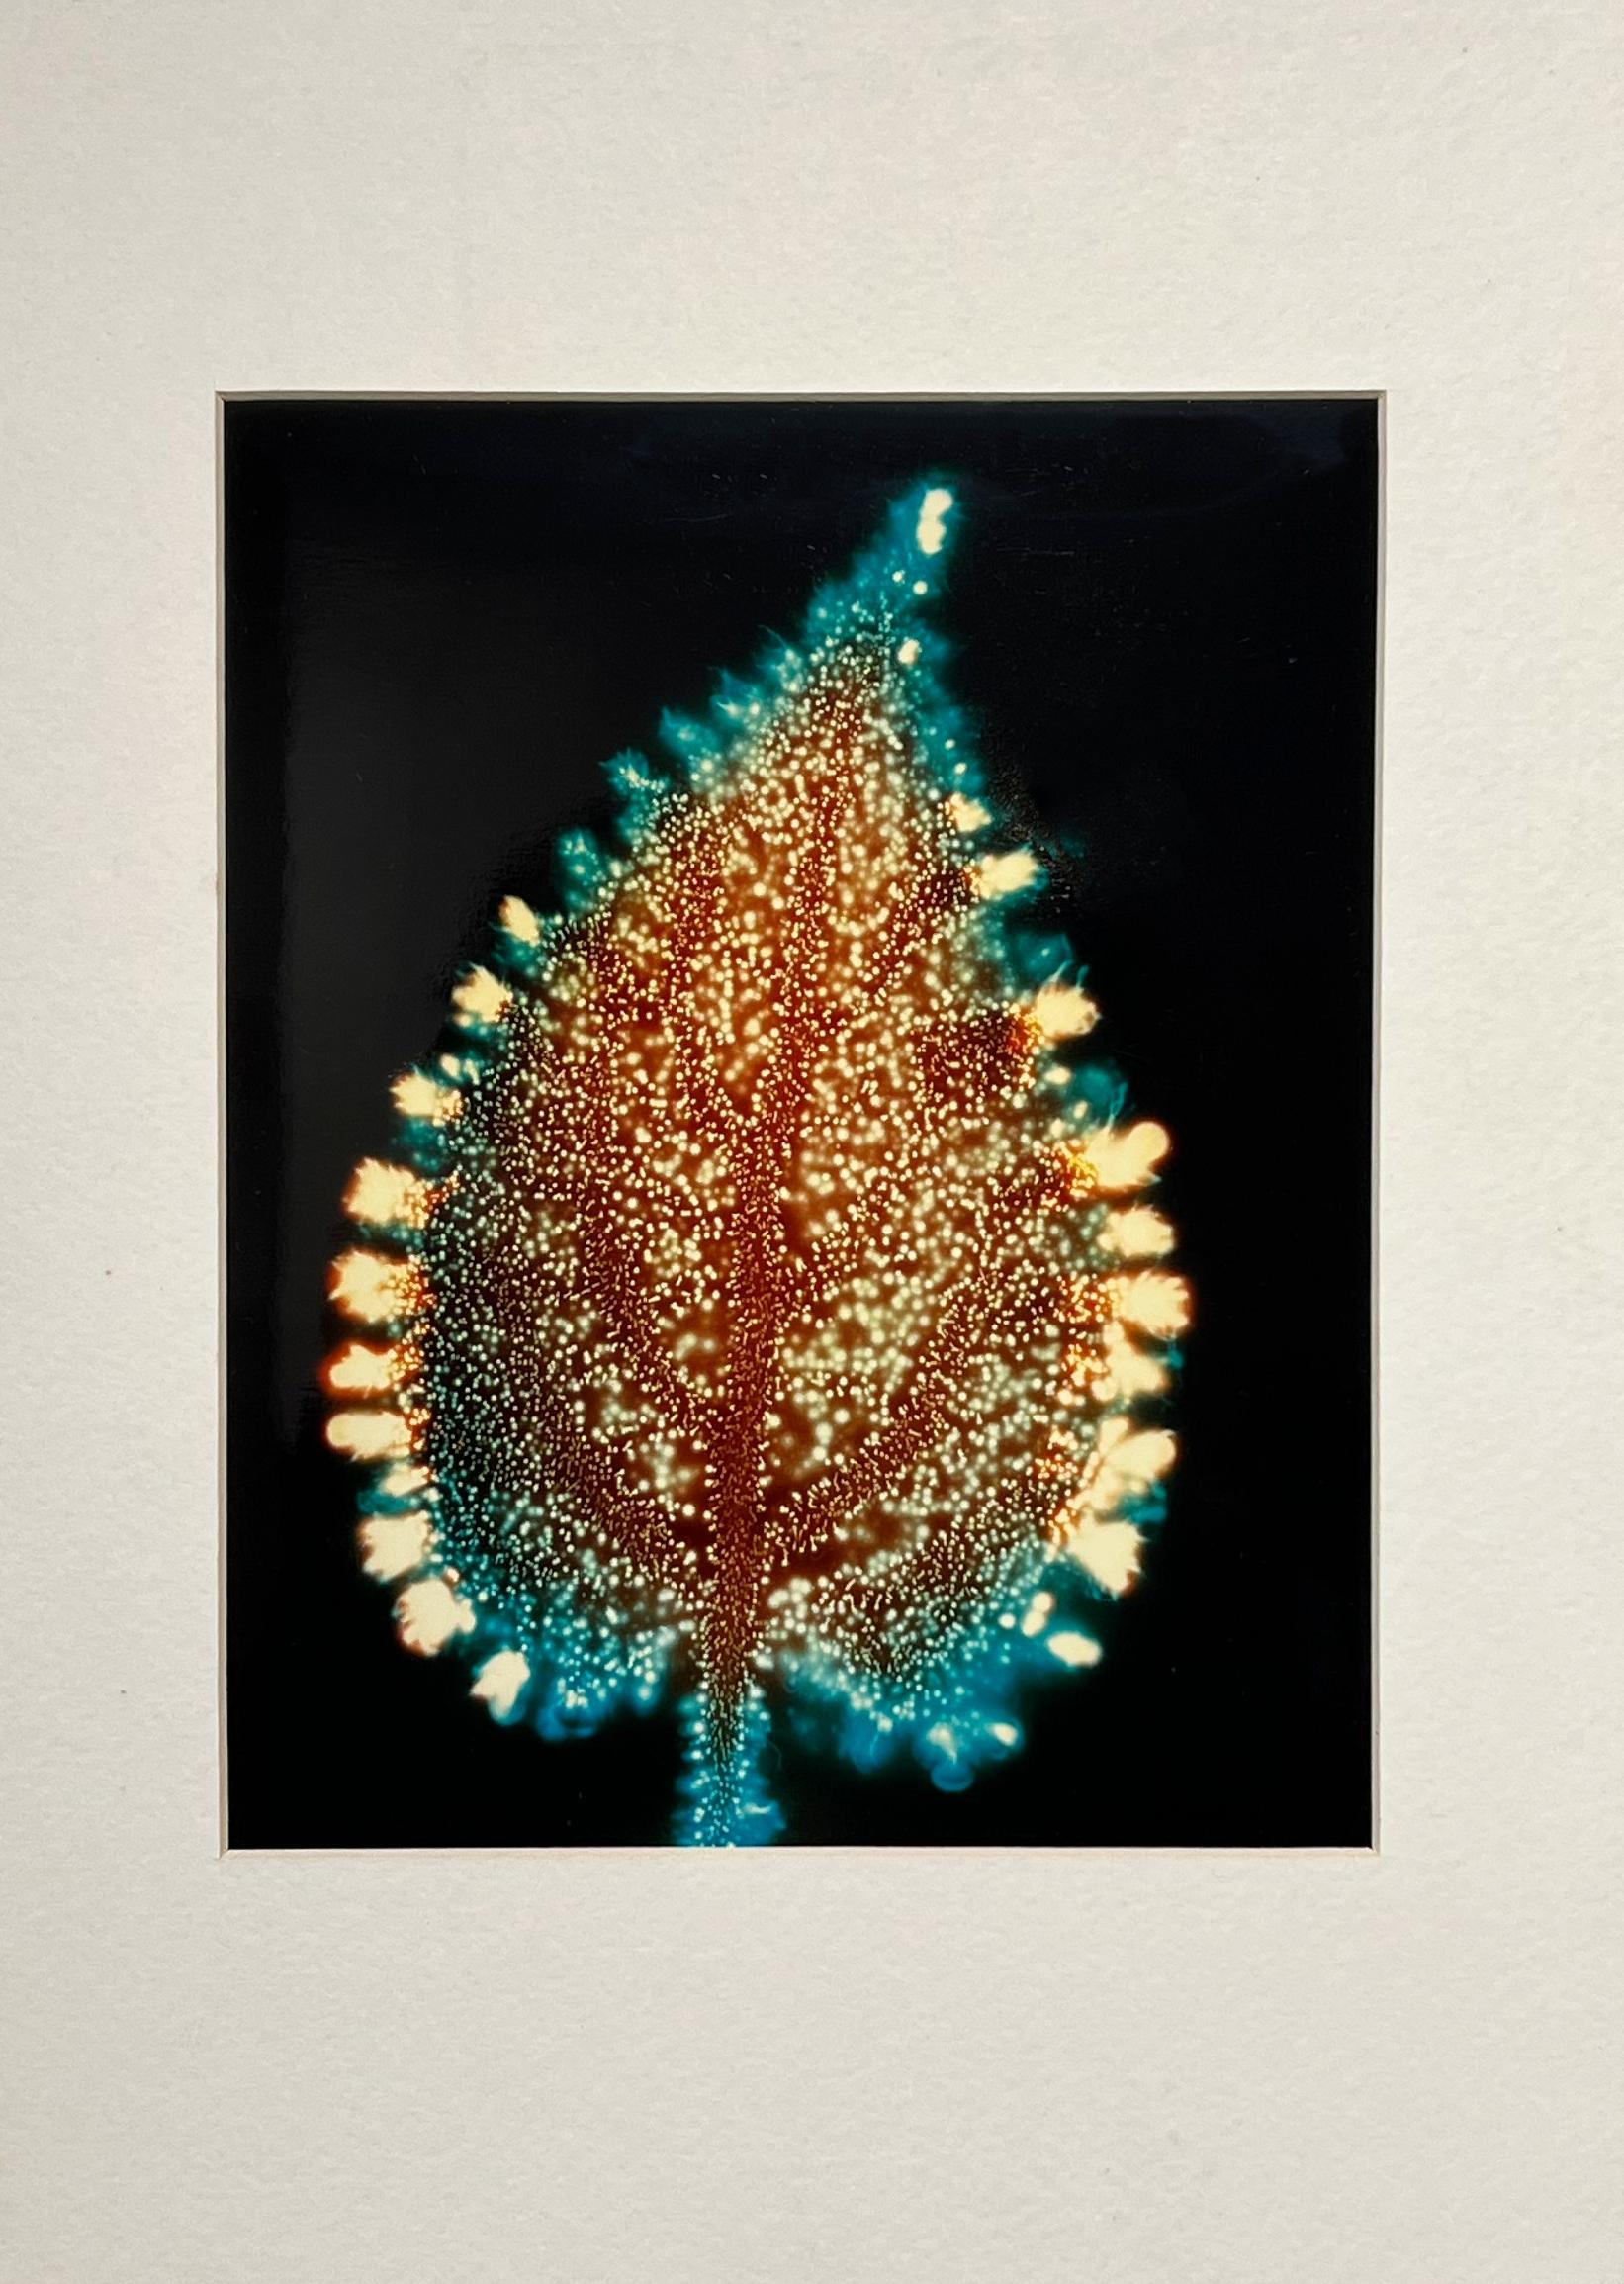 Fred Langford Edwards Color Photograph - "Nettle leaf", Kirlean Photograph, electrophotography, unique piece, Botany